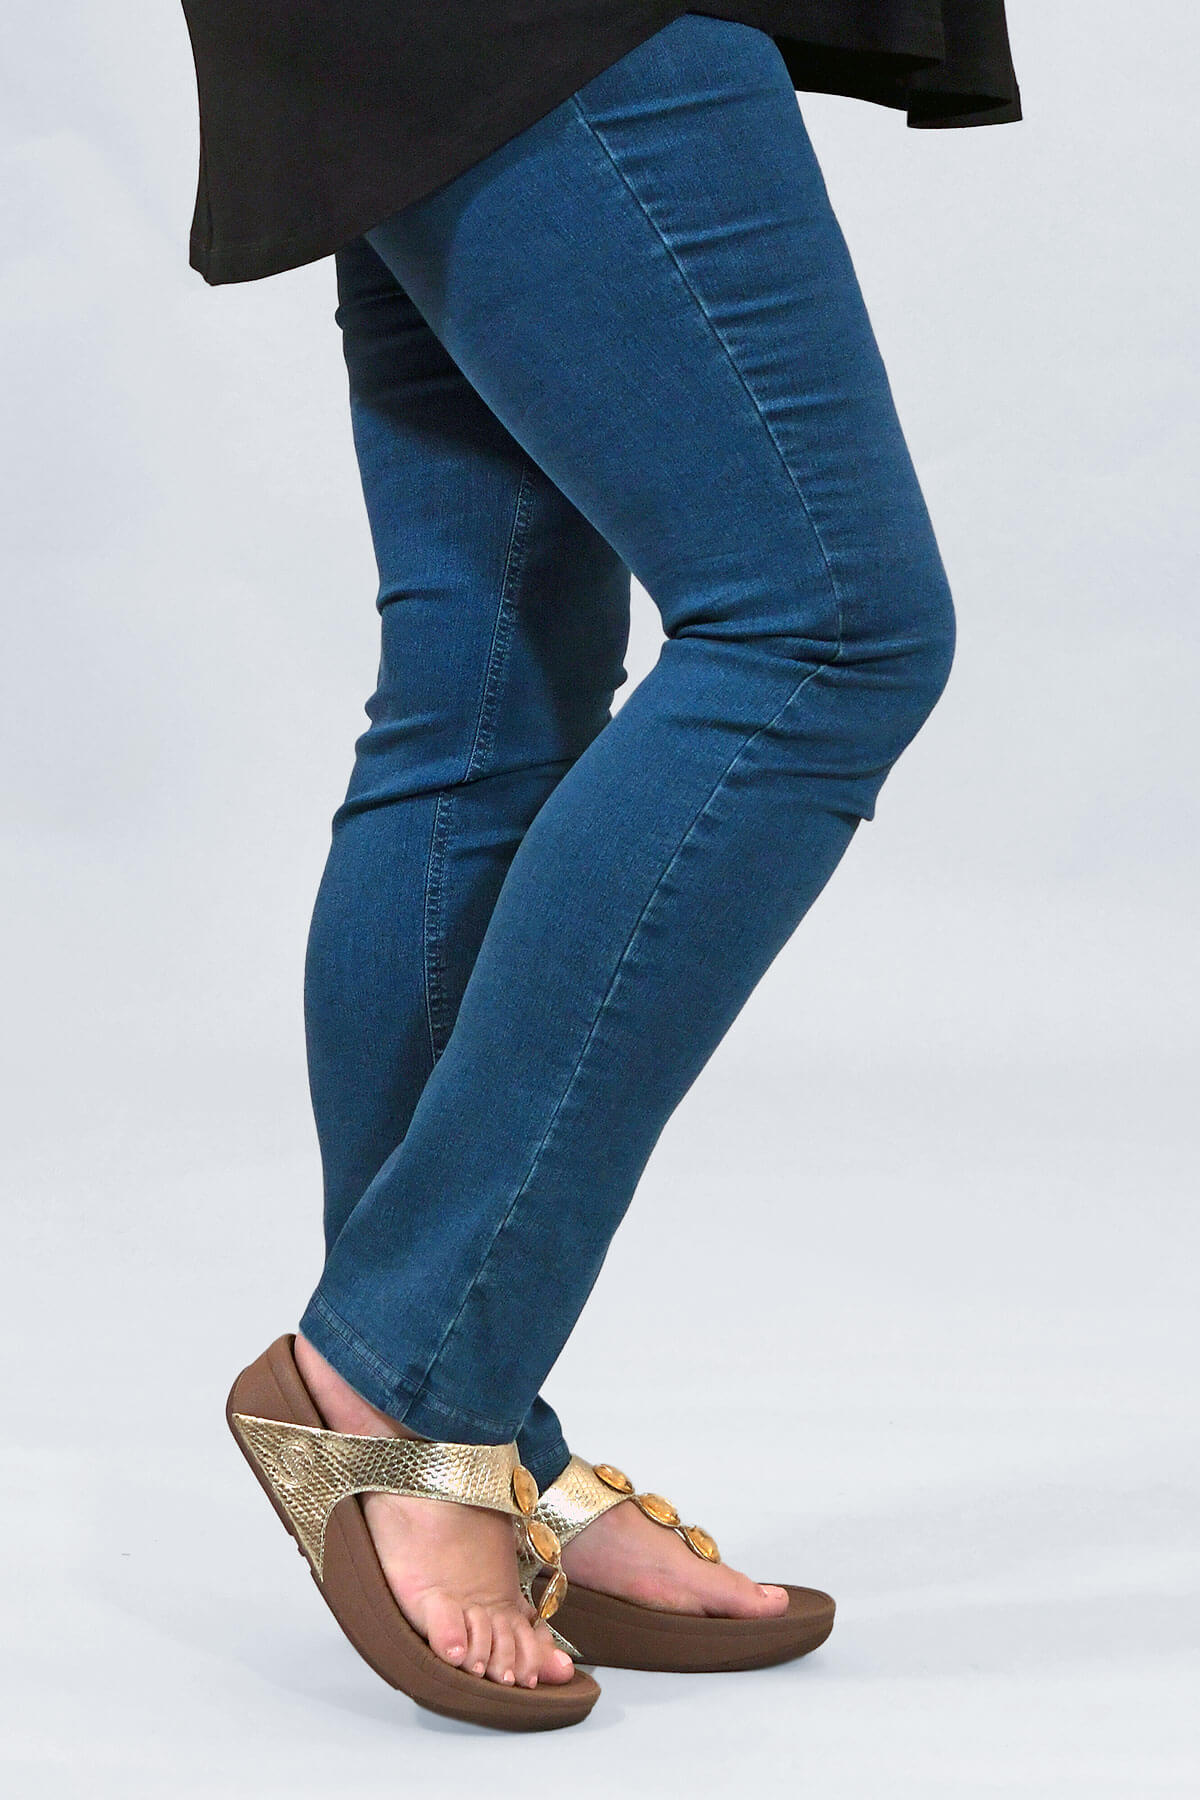 Robell Elena skinny jeans - light denim